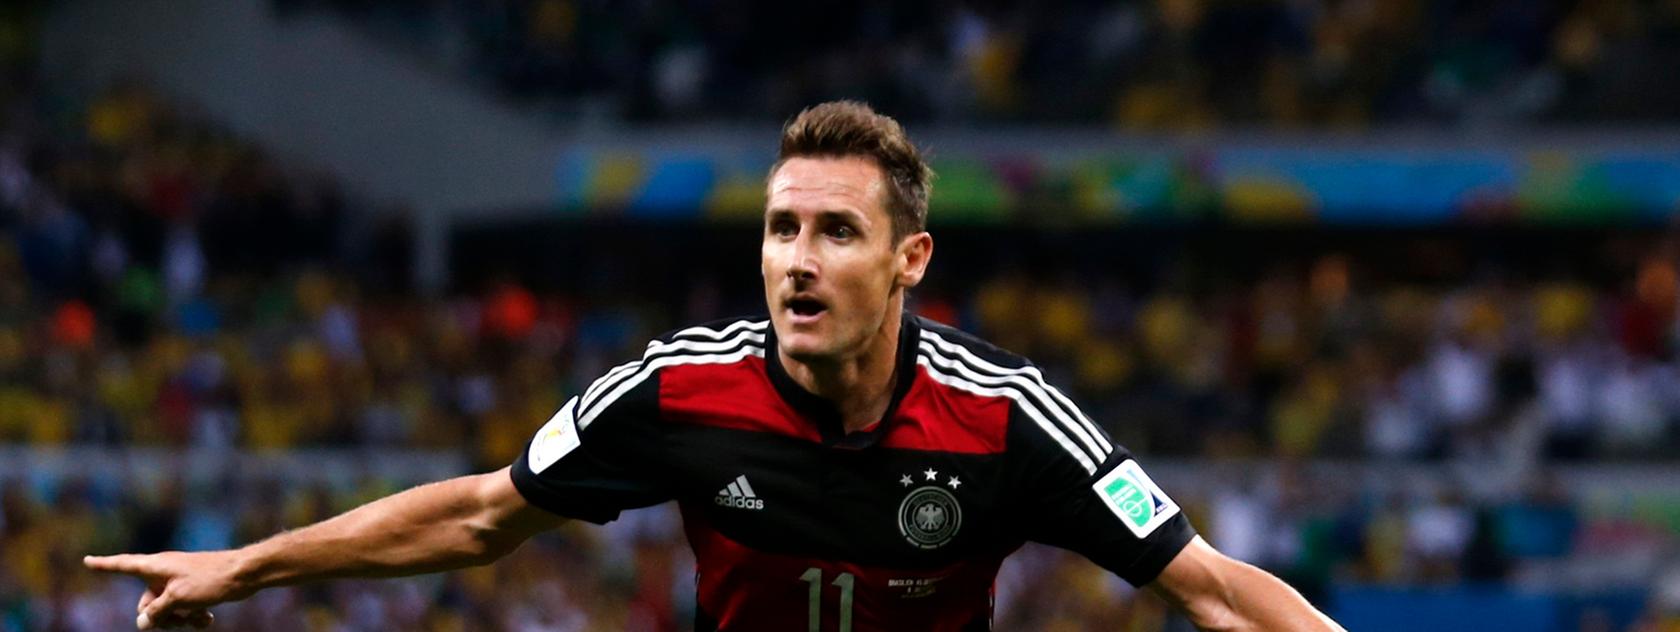 Im Halbfinale gegen Brasilien schoss Miroslav Klose das 2:0 – in dem Spiel, das letztendlich mit 7:1 gewonnen wurde.